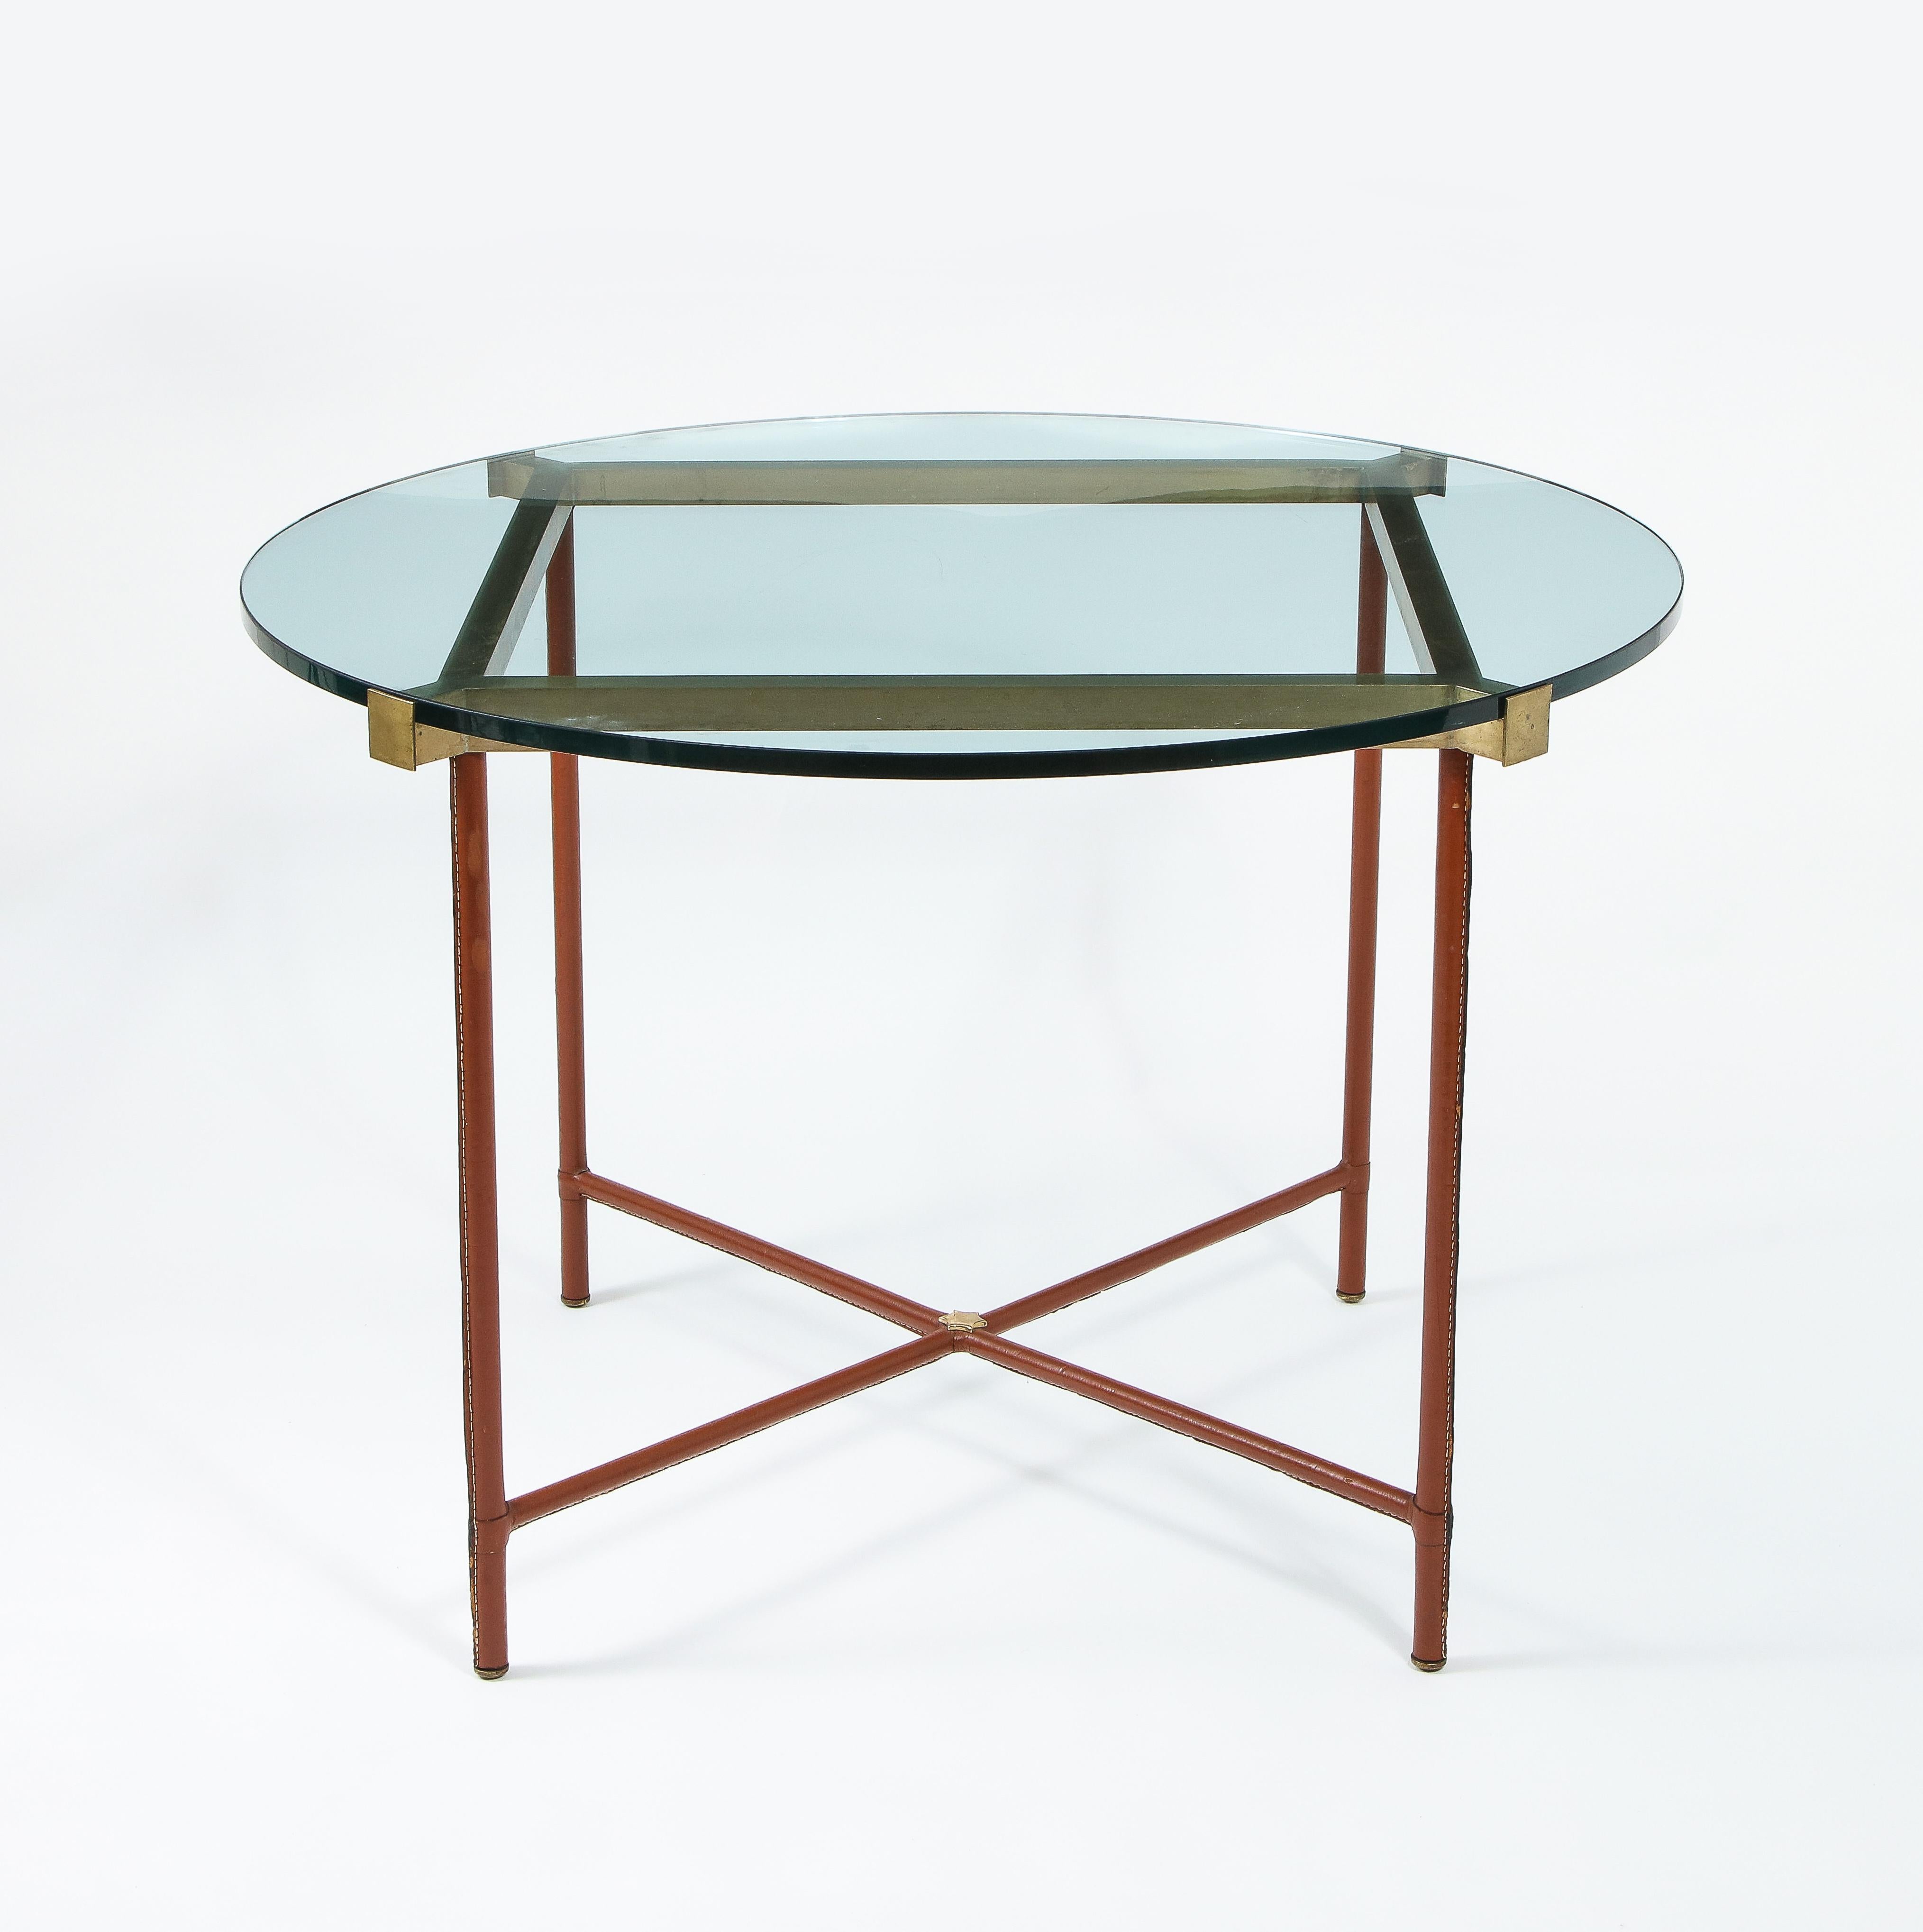 Exceptionnelle table centrale de Jacques Adnet habillée de cuir brun tabac, ses quatre pieds réunis par un X et un large cadre en laiton supportent le plateau en verre, elle repose sur des pieds en bronze.